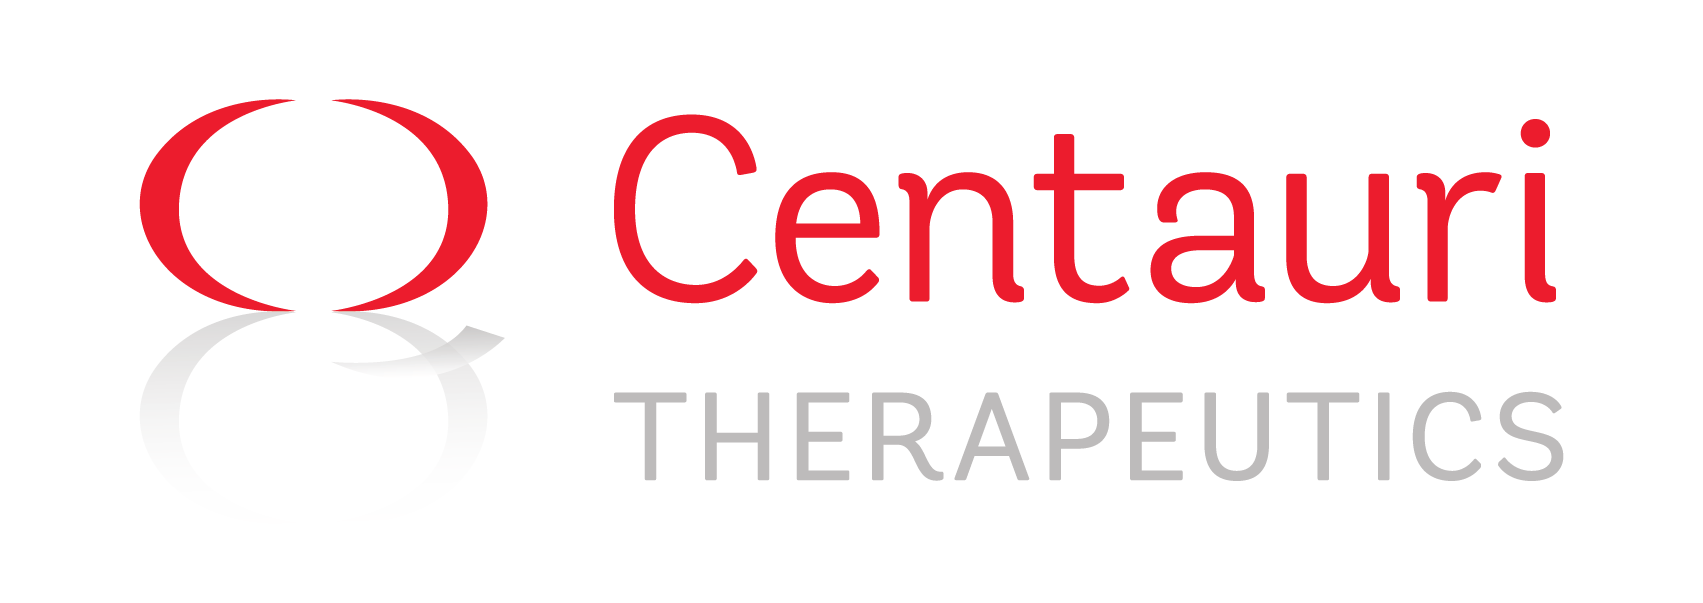 Centauri Therapeutics